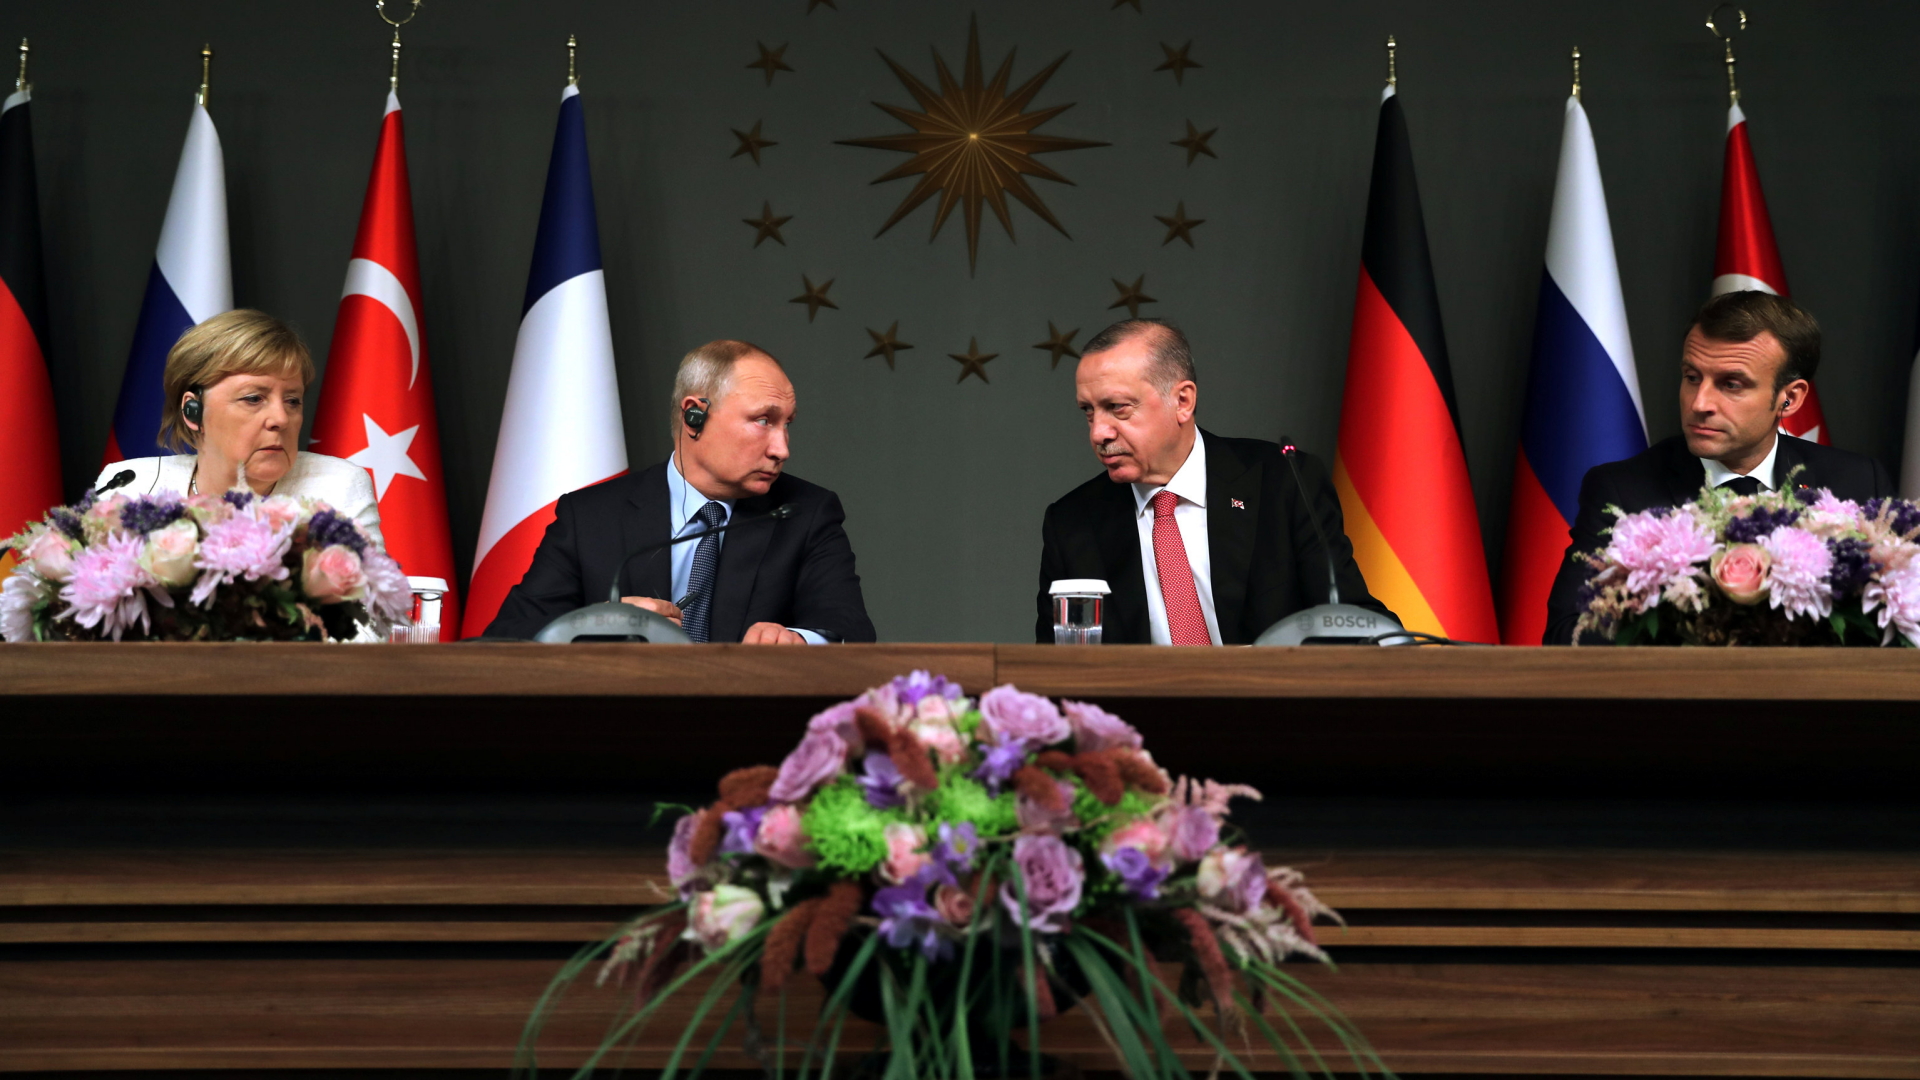 Die Teilnehmer des Syrien-Gipfels in Istanbul geben die Abschlusspressekonferenz (von links): Bundeskanzlerin Merkel, der russische Präsident Putin, sein türkischer Amtskollege Erdogan und Frankreichs Präsident Macron.  | Bildquelle: REUTERS